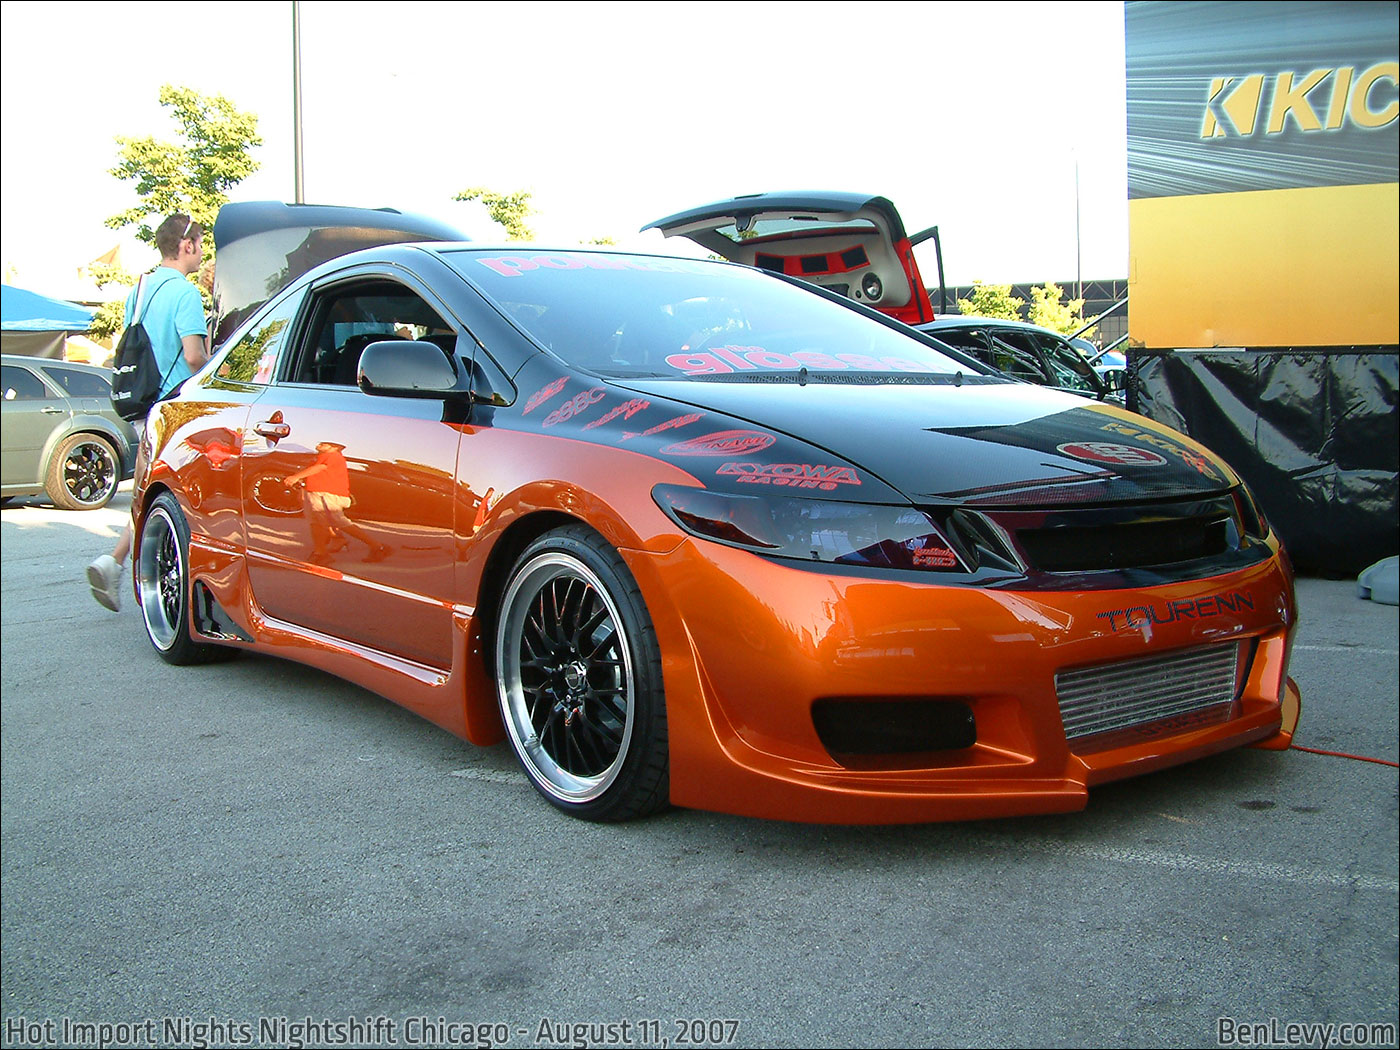 Orange Honda Civic